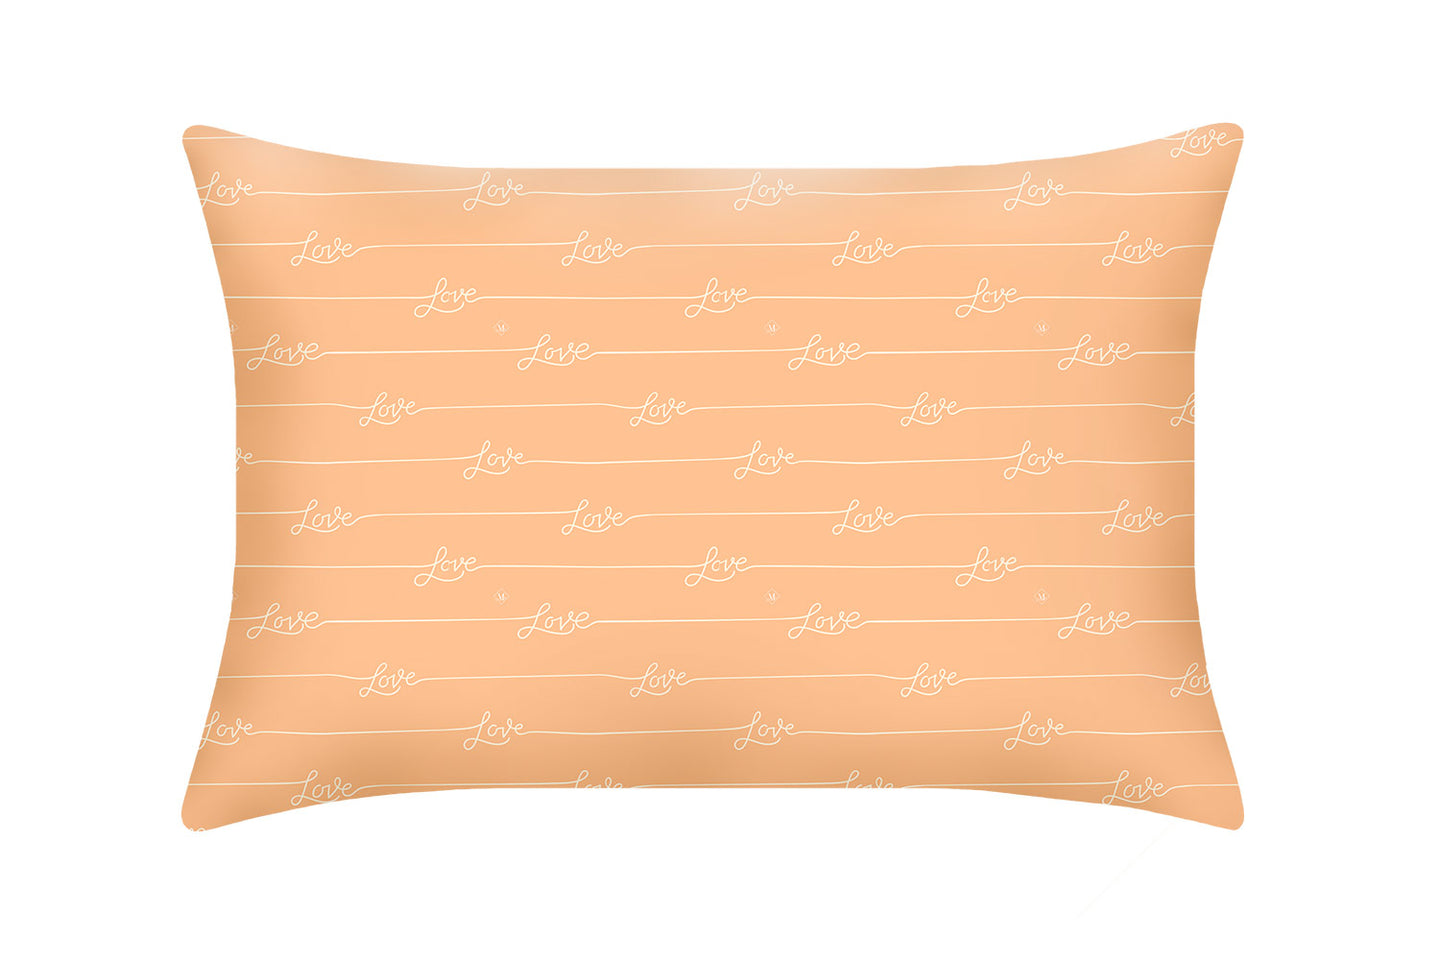 Pure Silk Pillowcase in Peach Fuzz colour with Love script writing